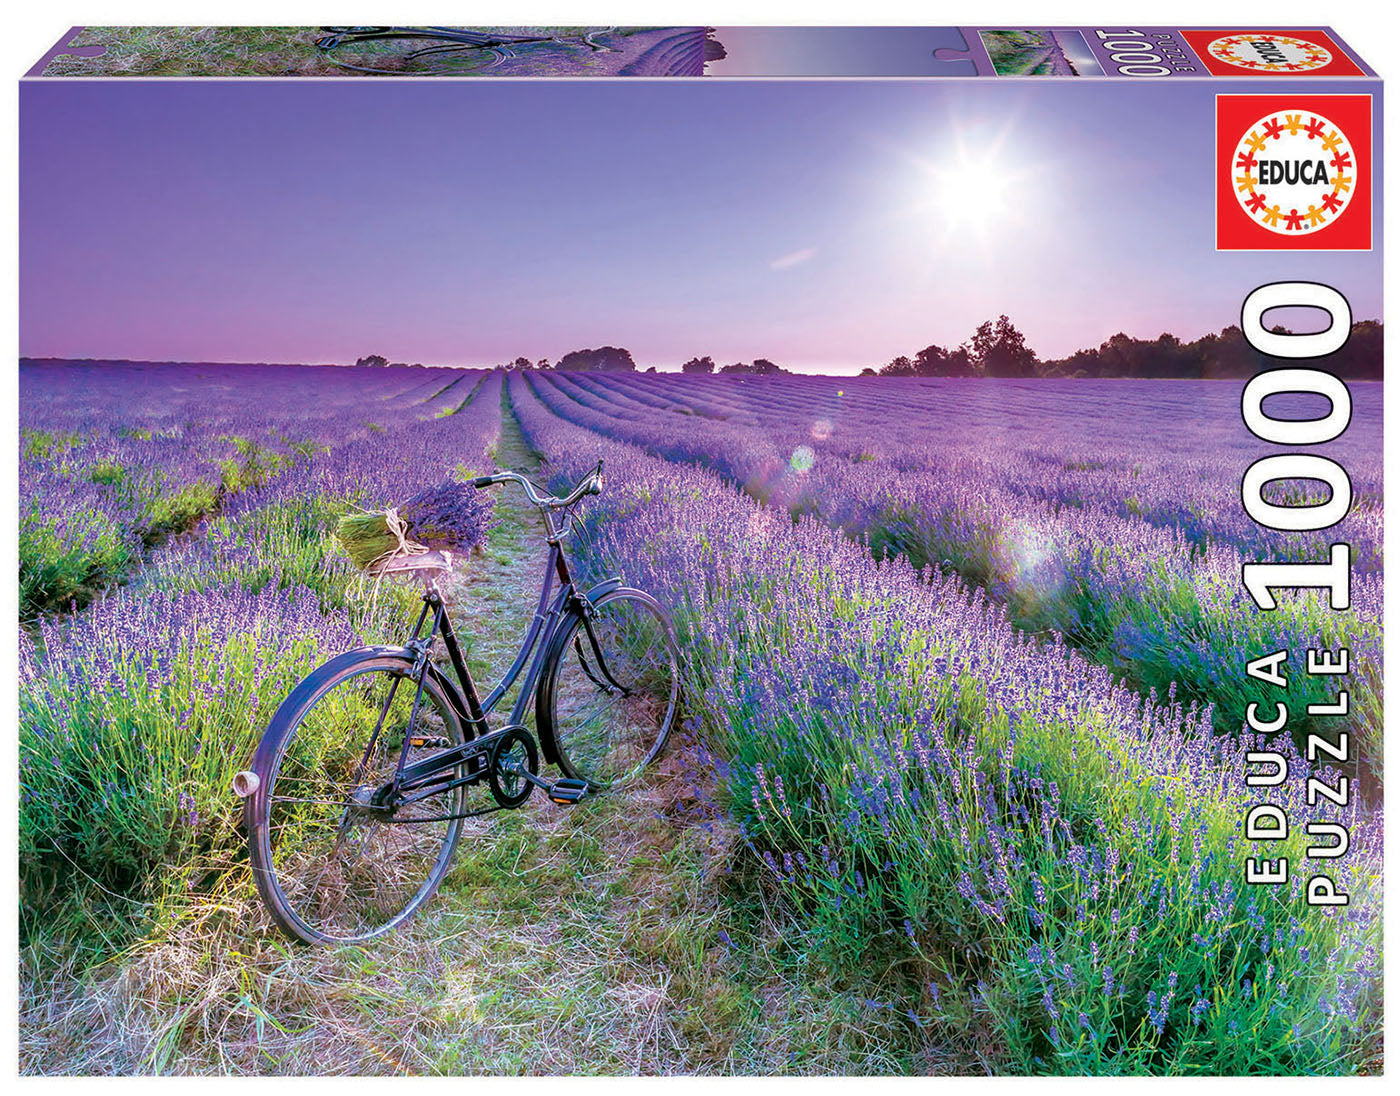 Bike in Lavender Field